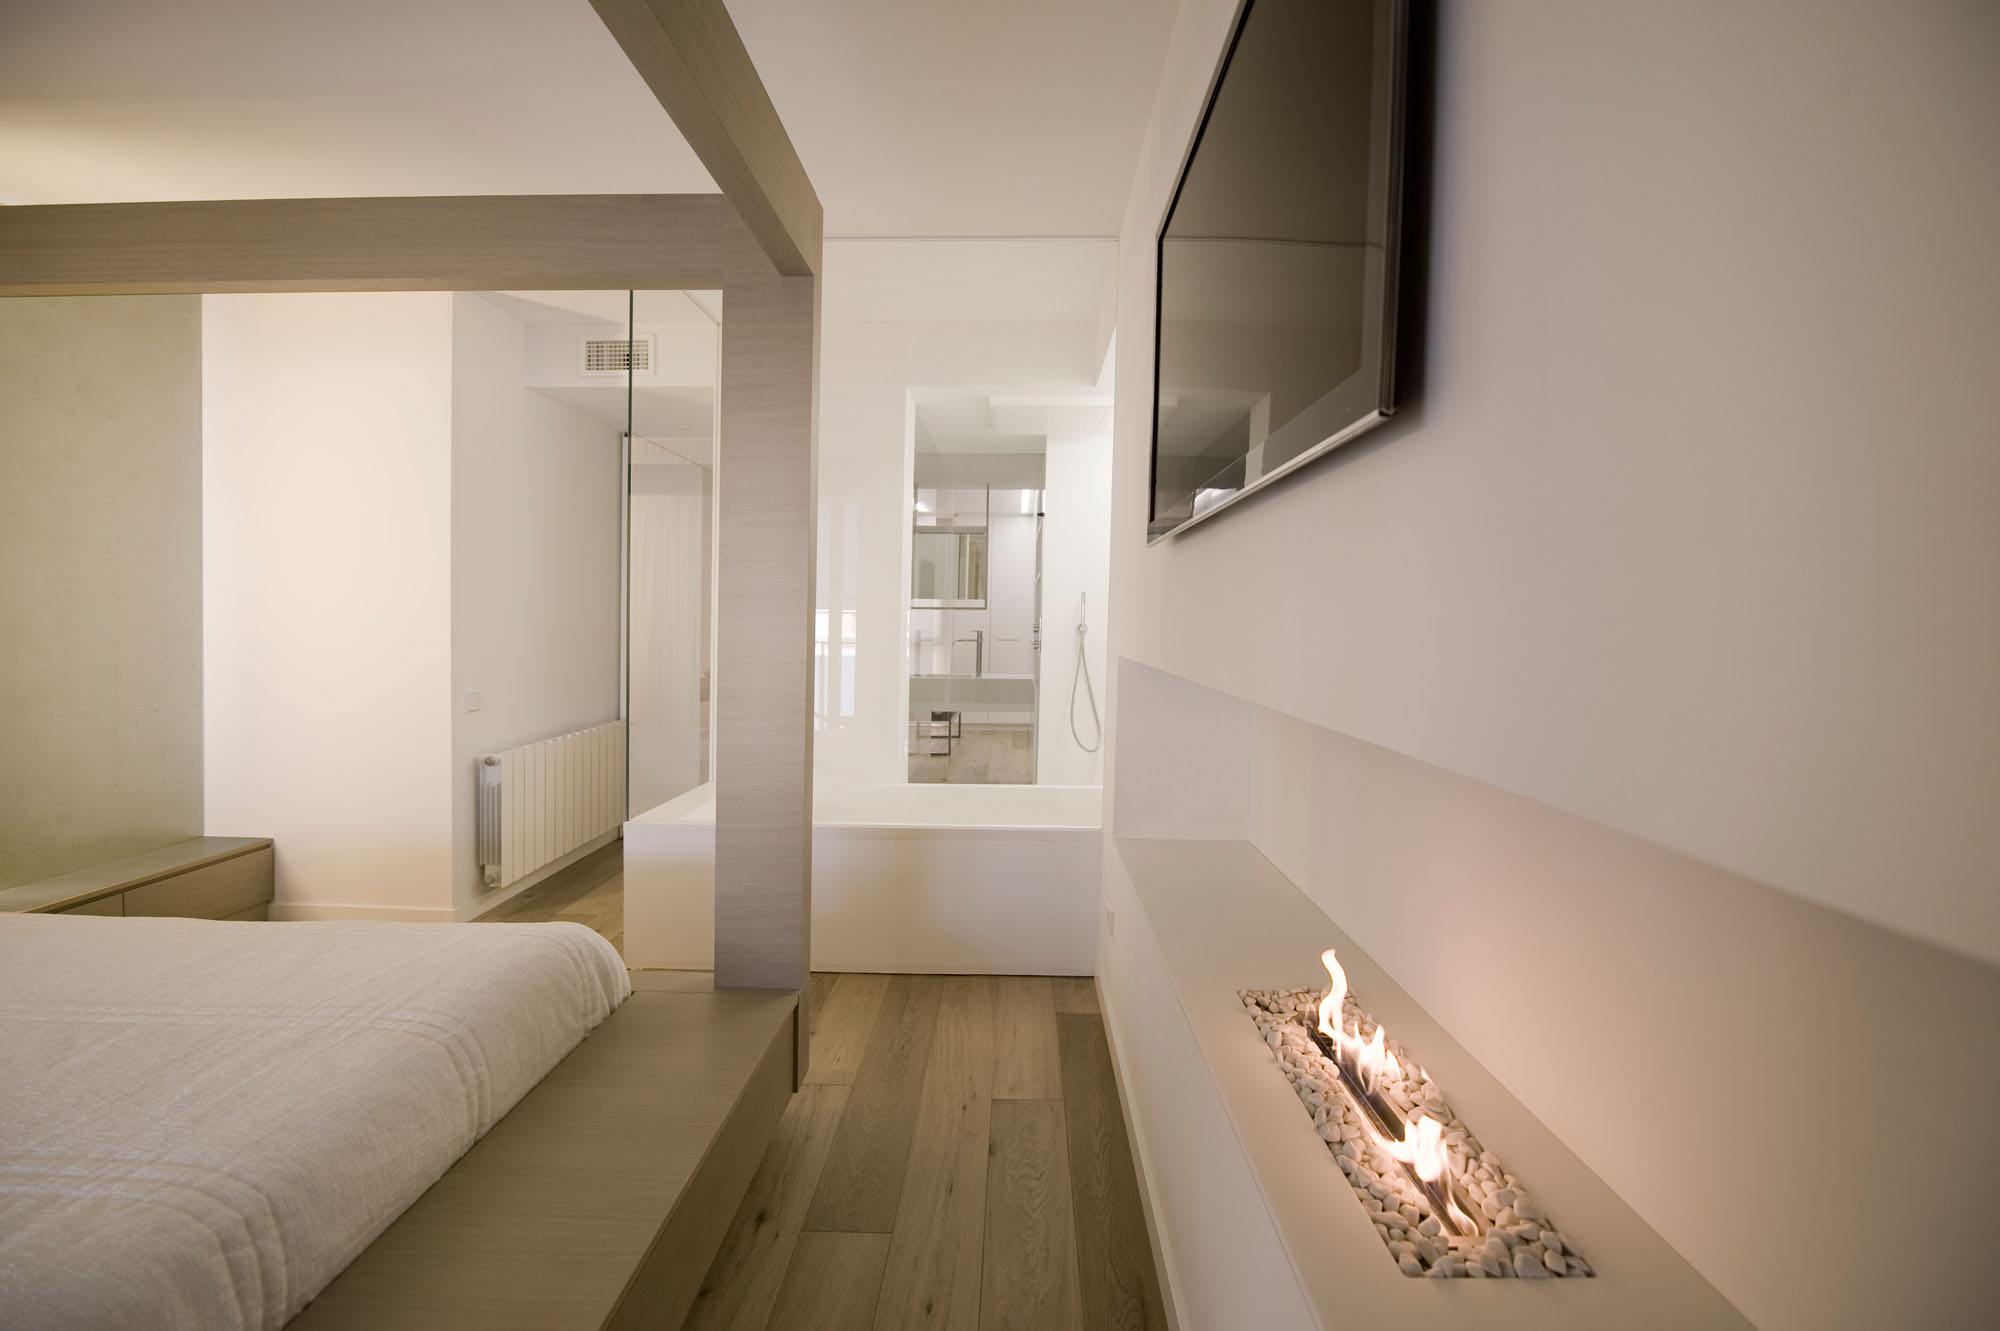 Спальня в современном стиле хай-тэч, дизайн Cuartopensante